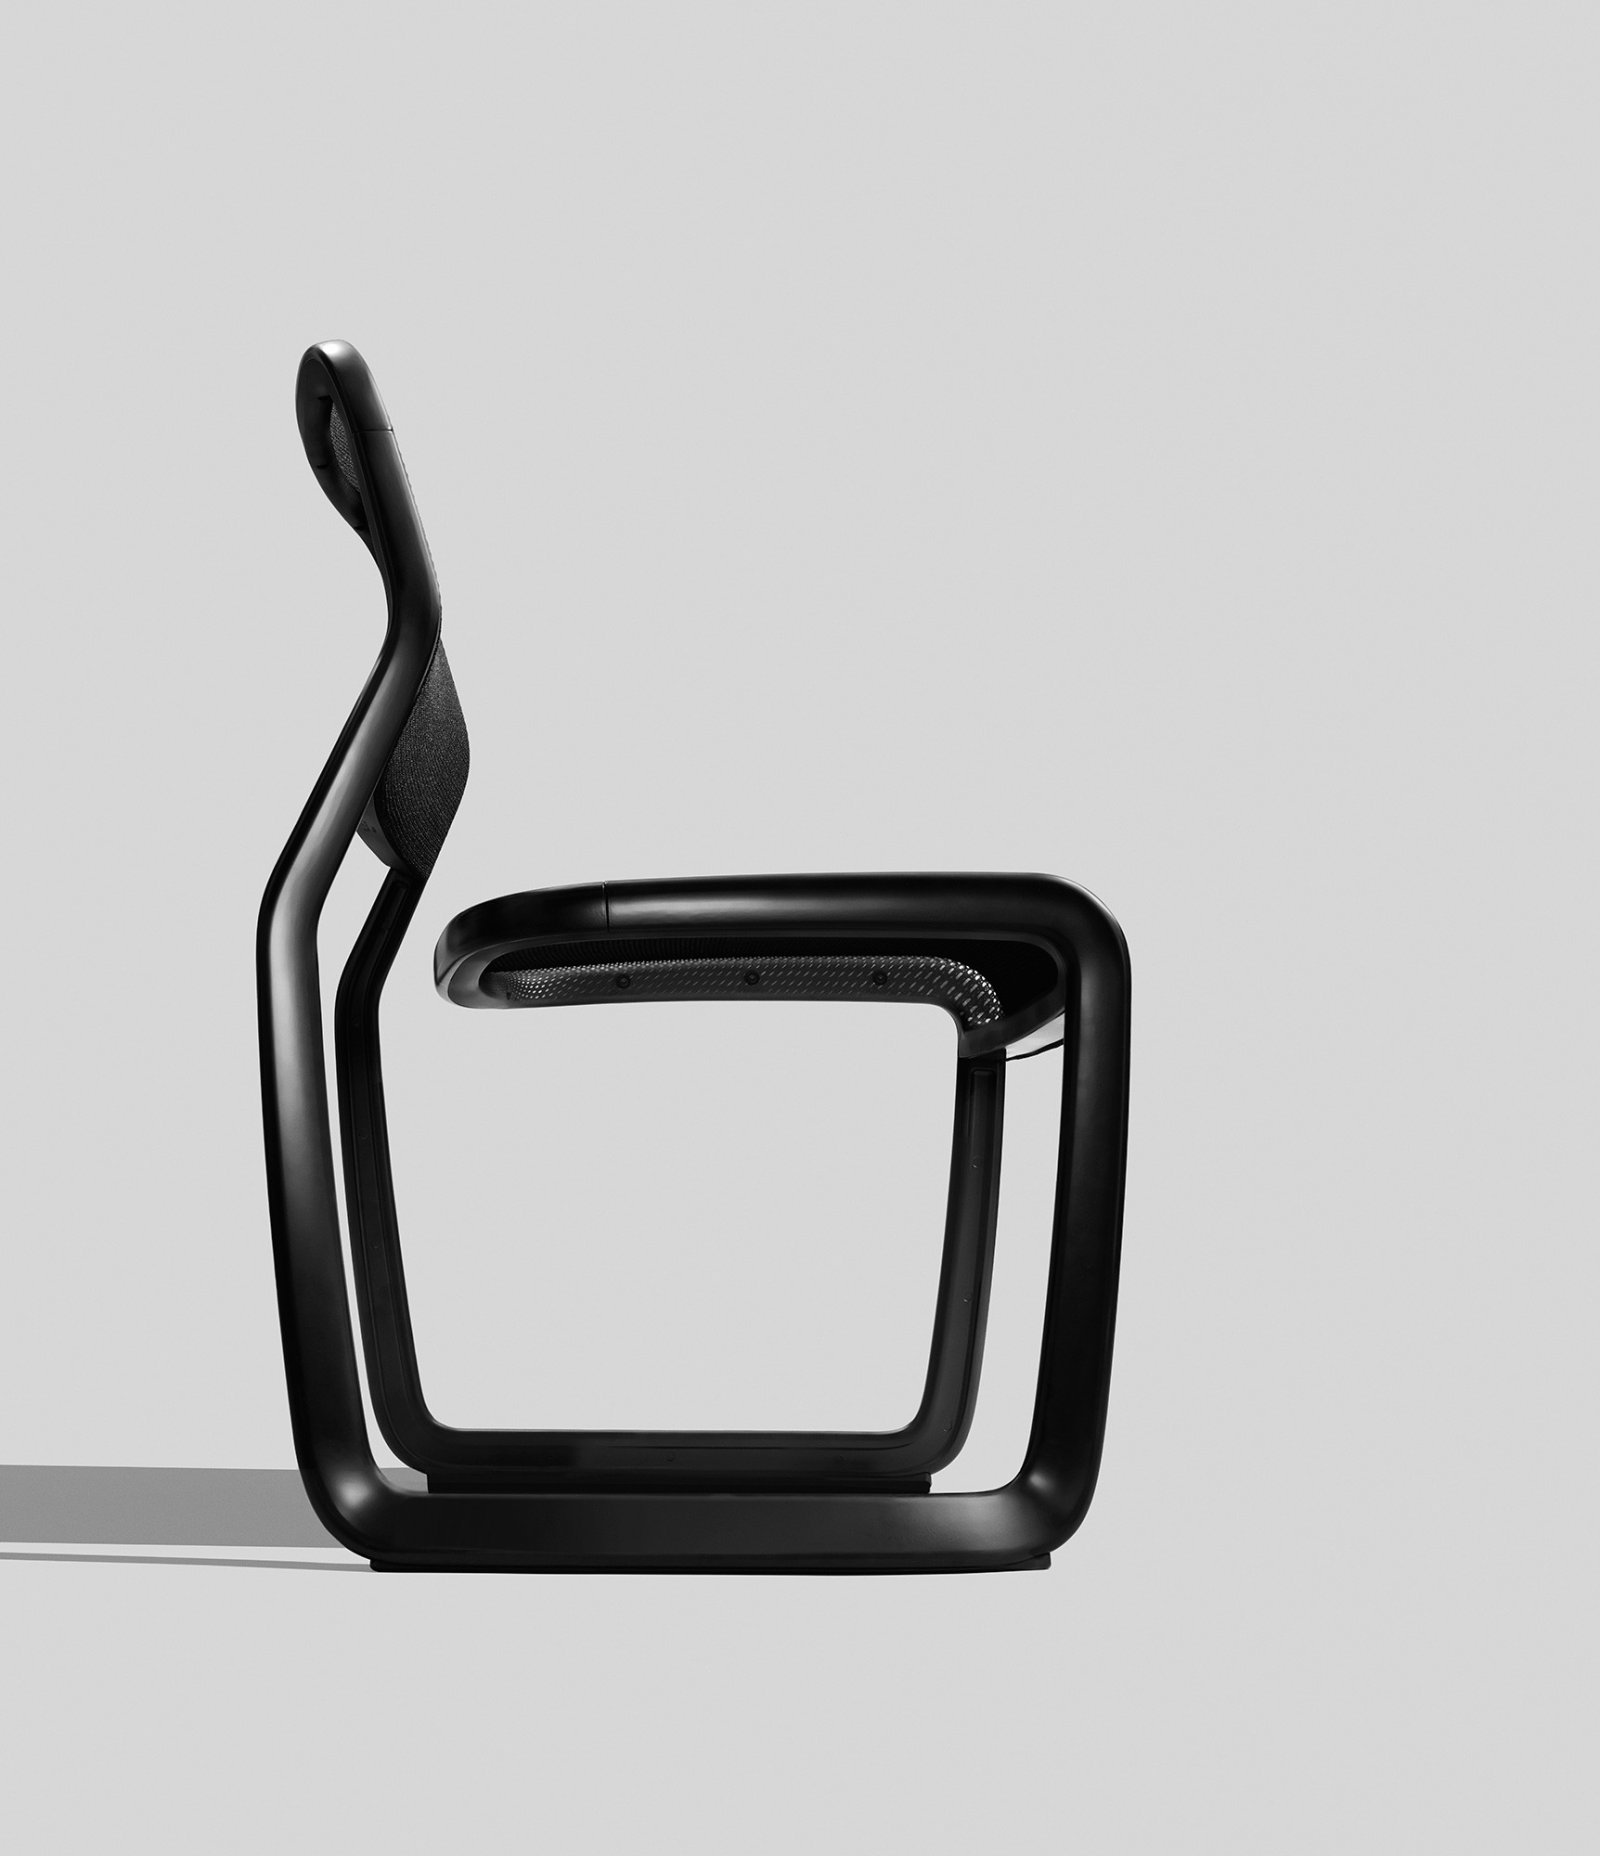 椅子,创新现代设计,黑色,白色,简洁,工业设计,产品设计